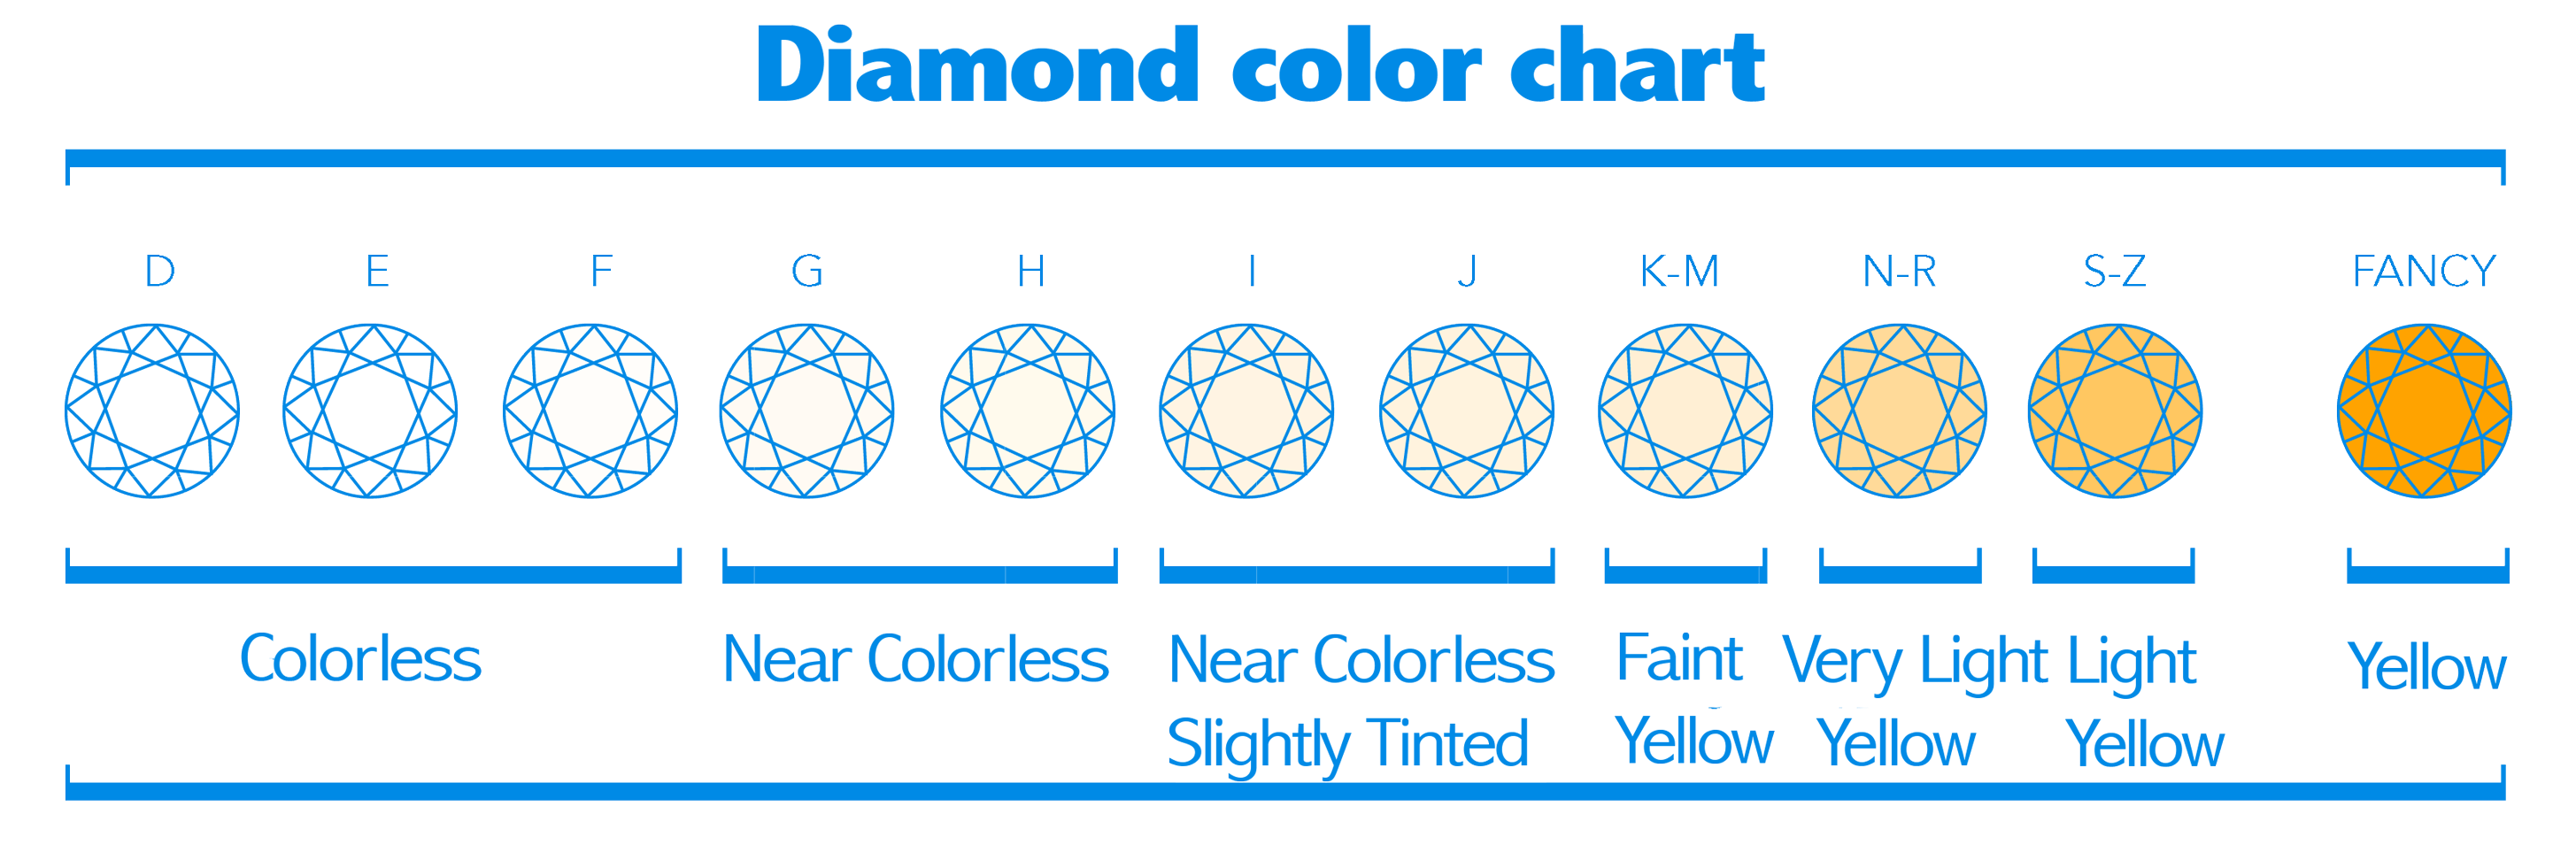 Diamant Farbe Erwiesene Empfehlungen Beim Diamantkauf Antwerpdiamonds Direct